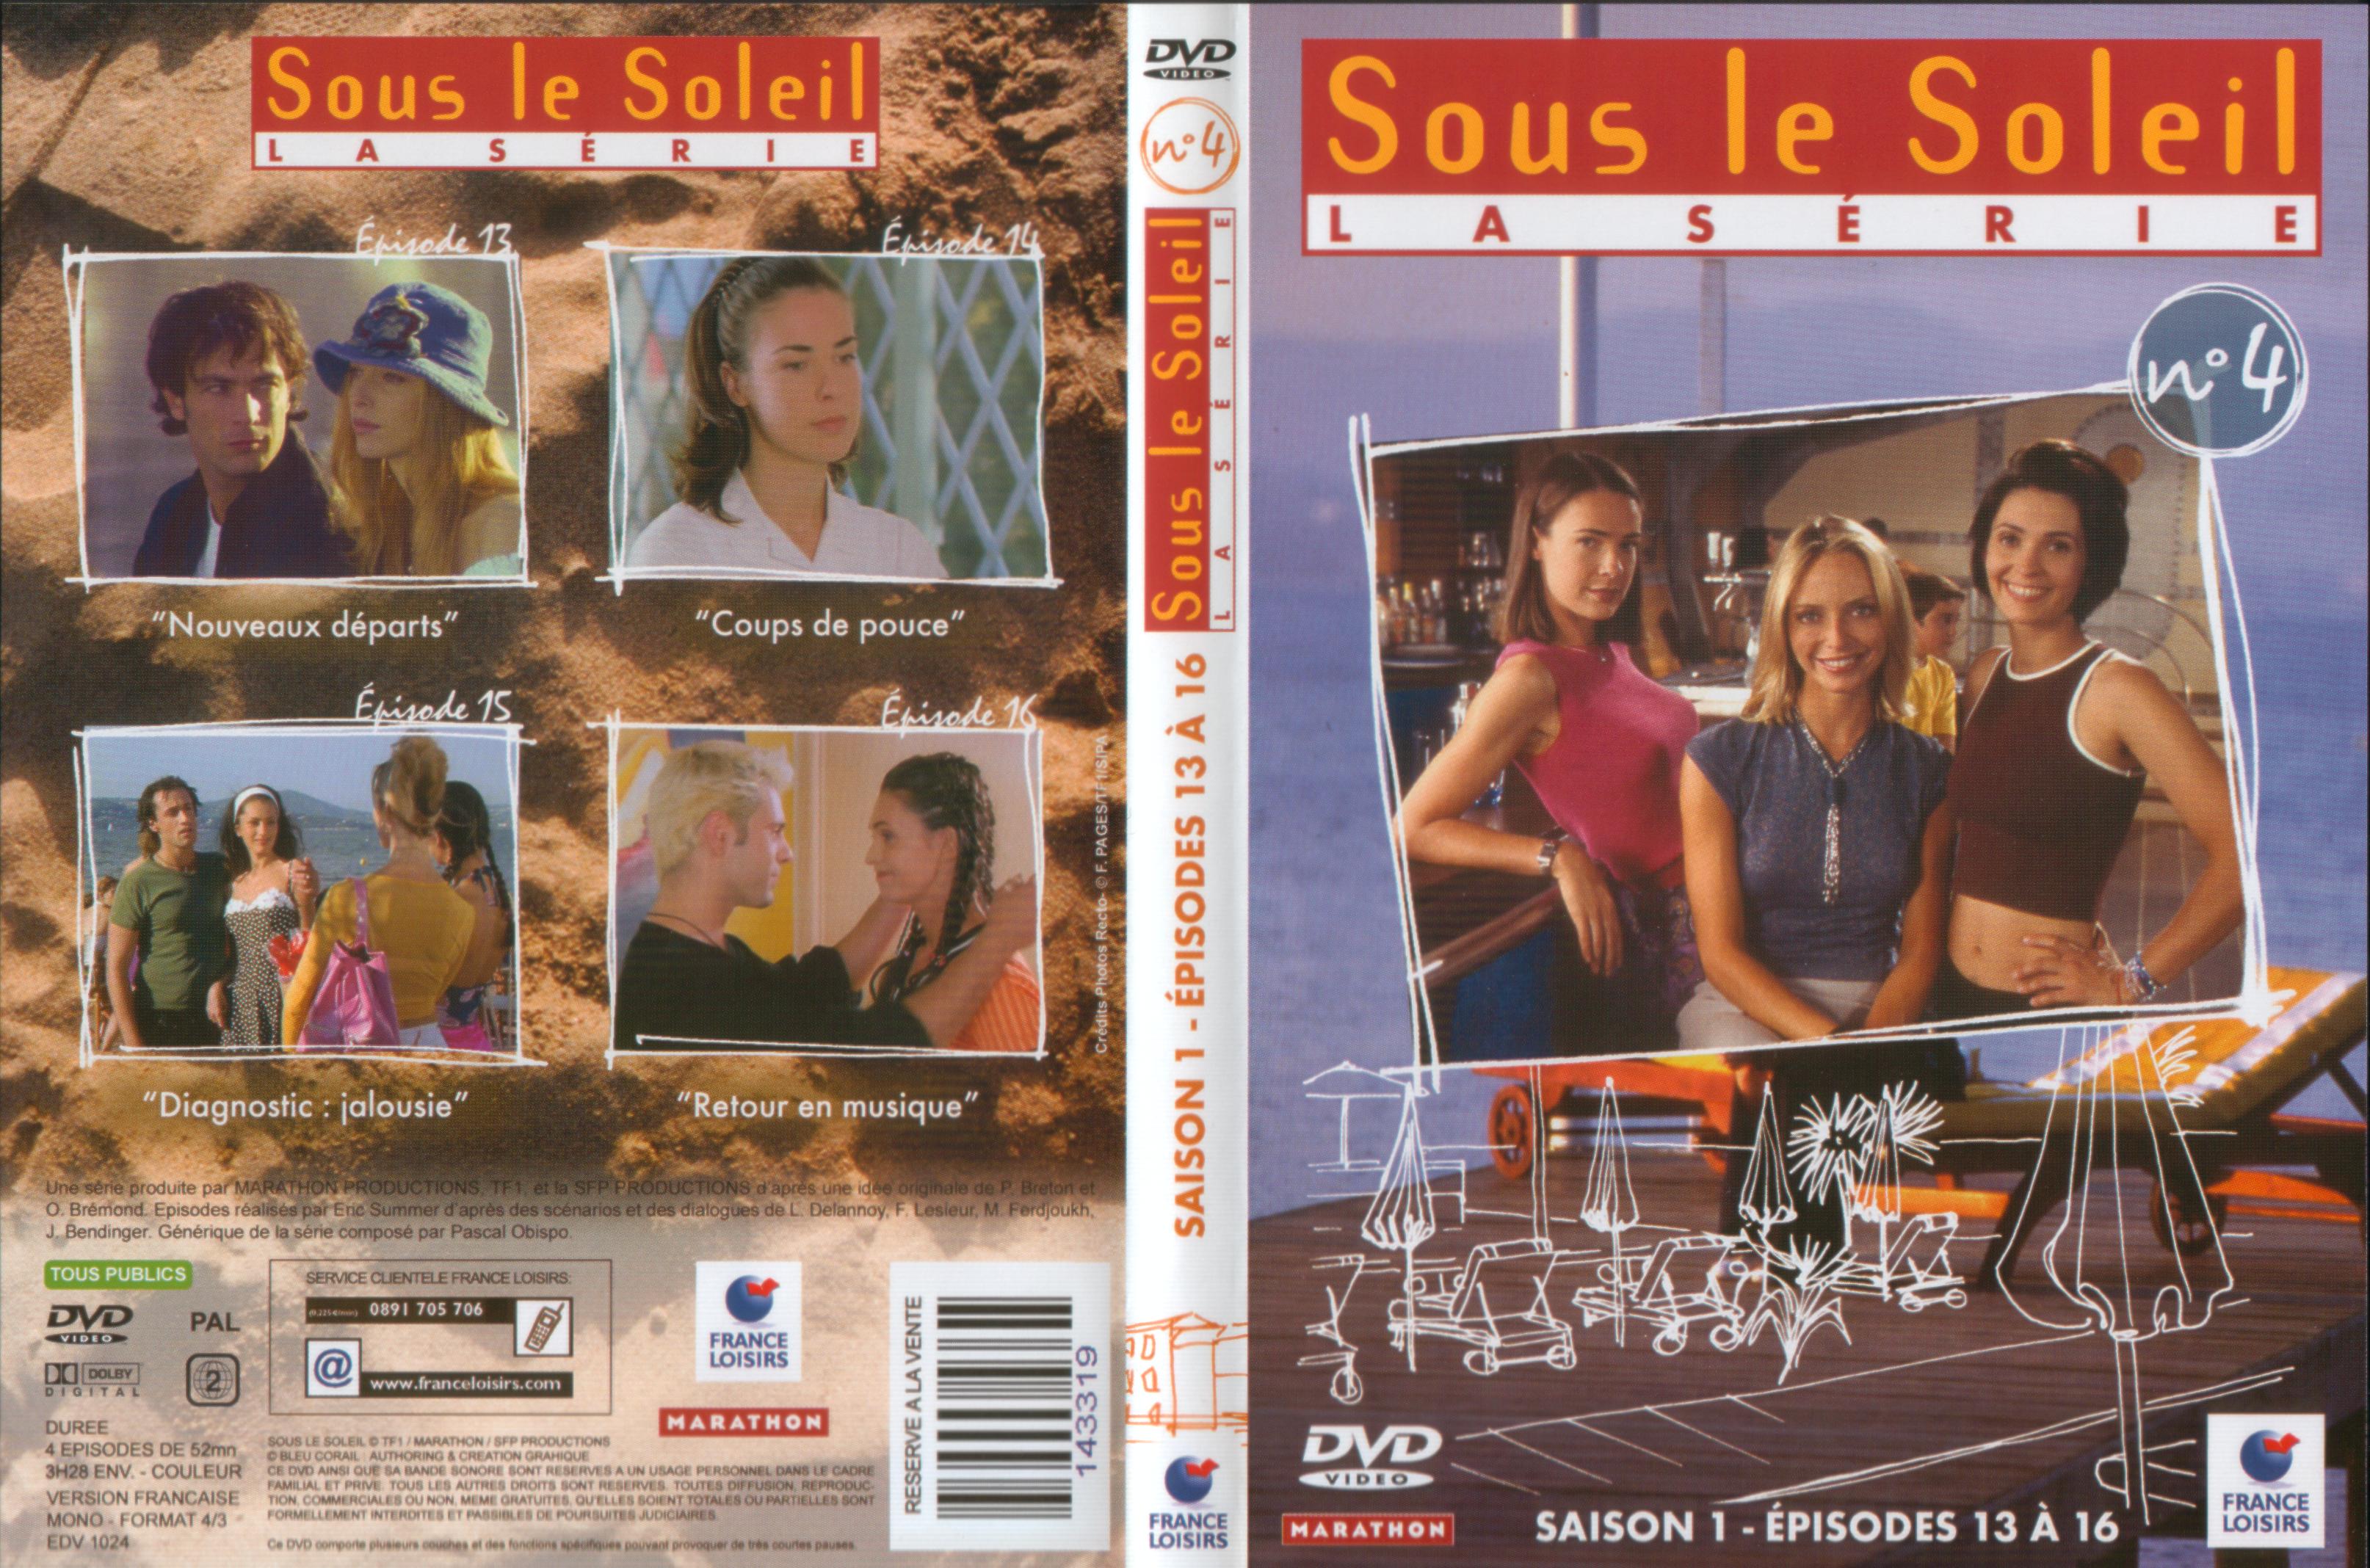 Jaquette DVD Sous le soleil saison 1 vol 4